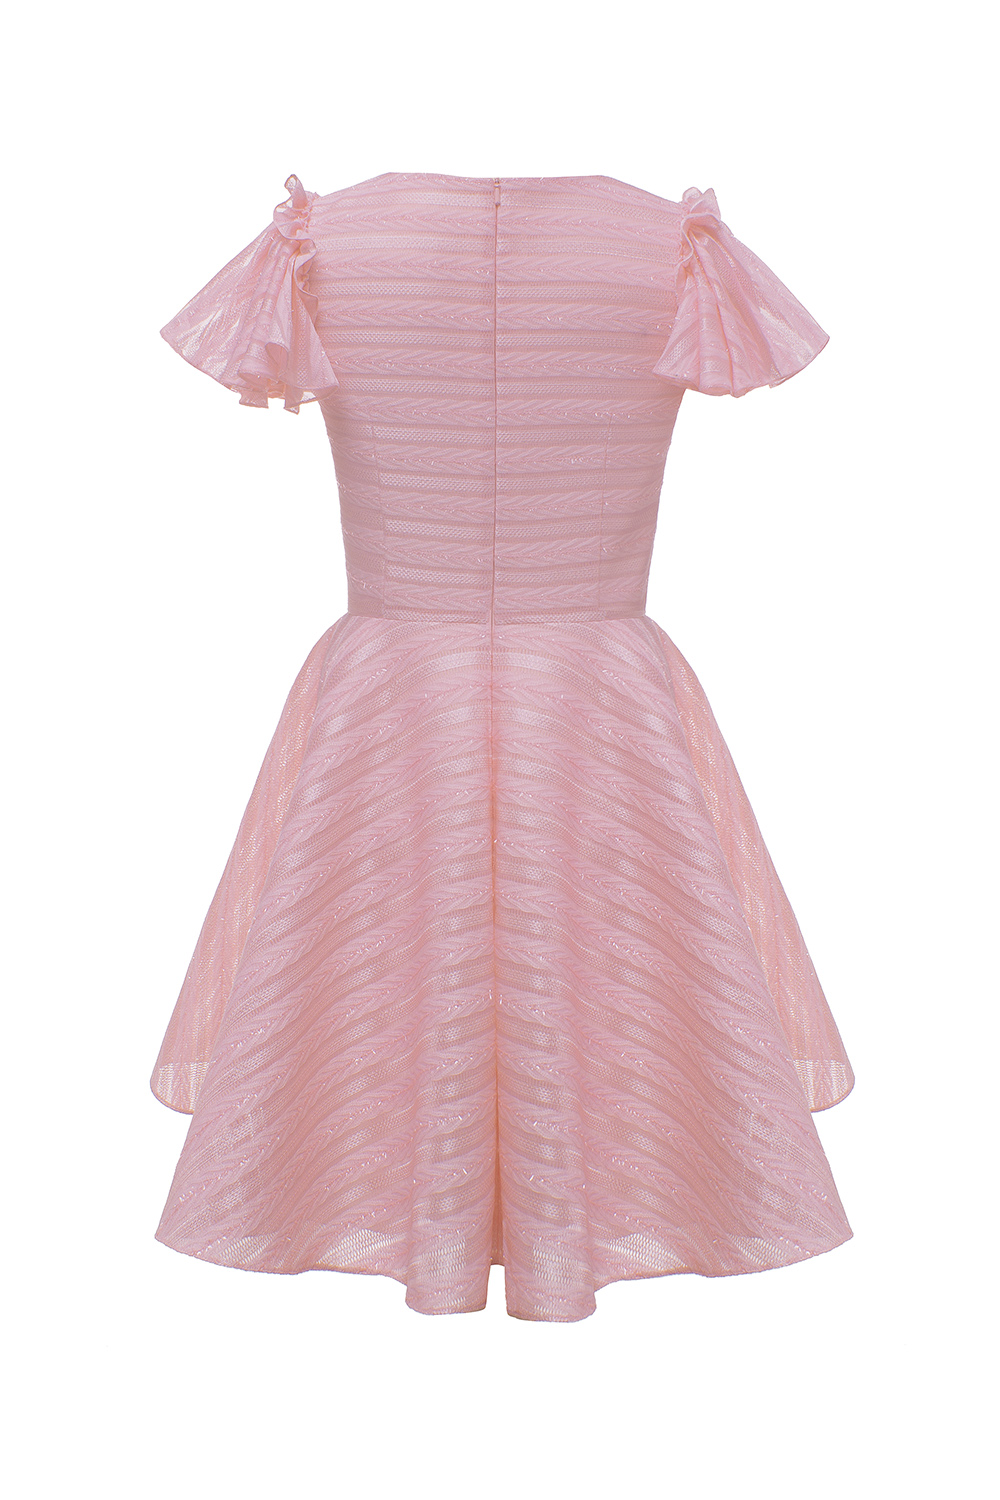 1102X - Powder Pink Prom Dress